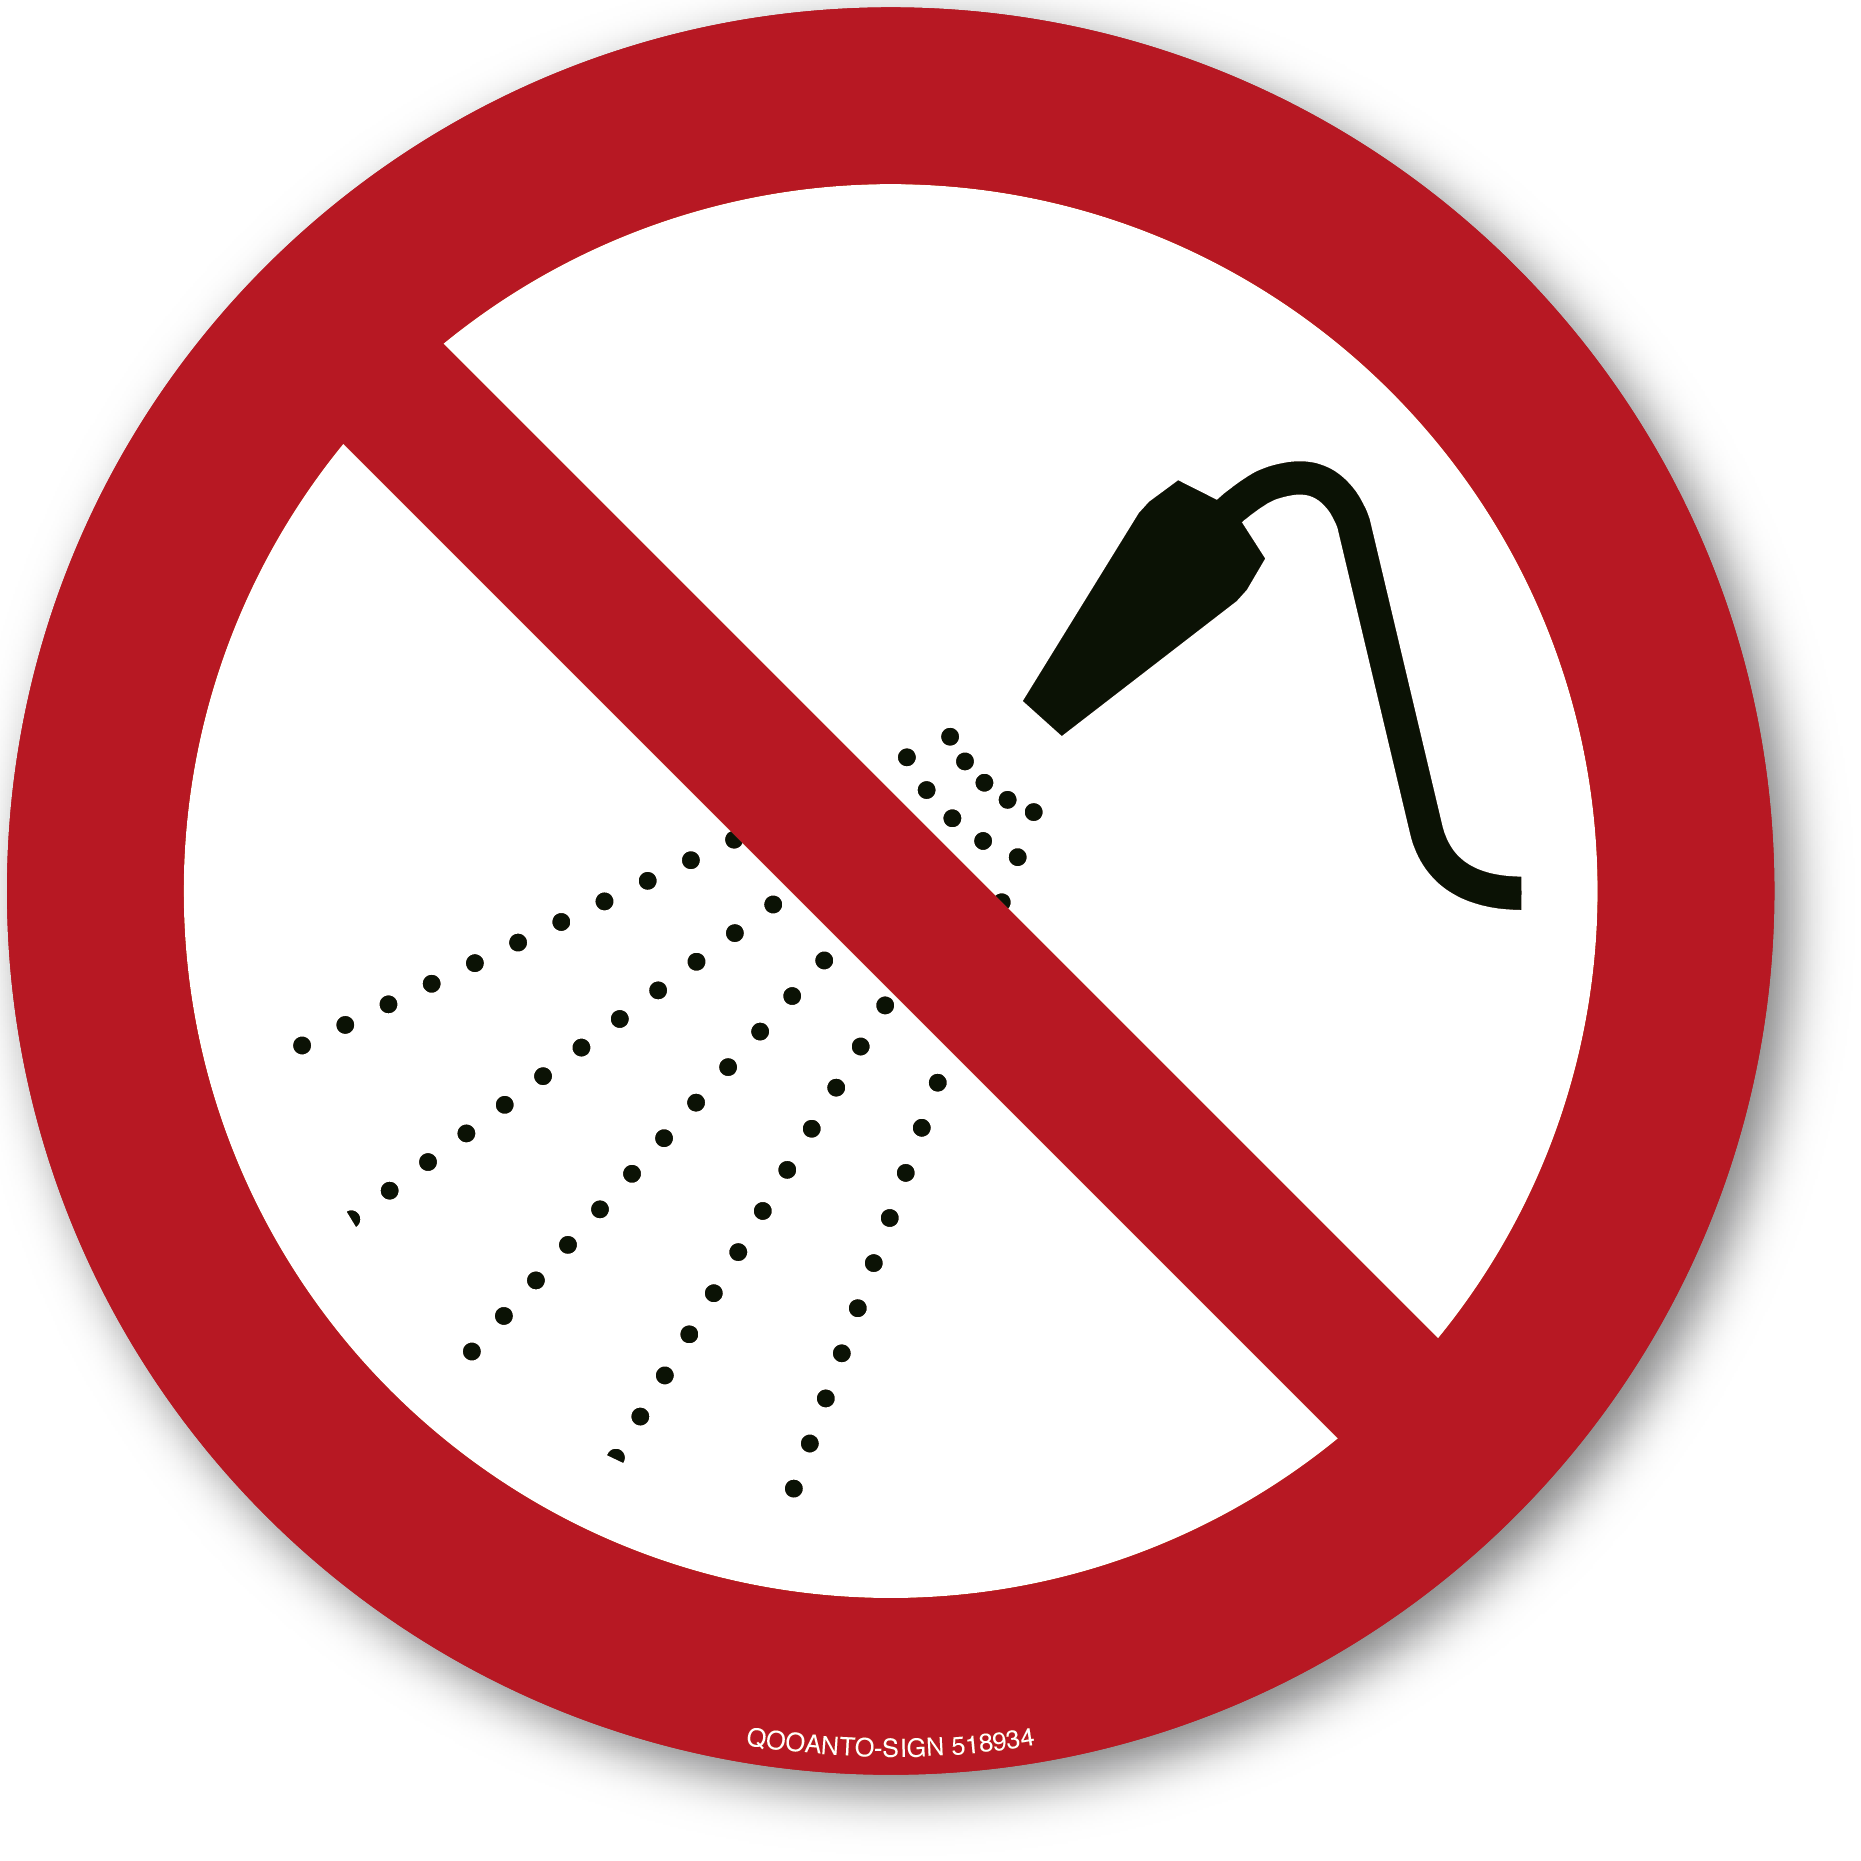 Mit Wasser spritzen verboten, Schild oder Aufkleber